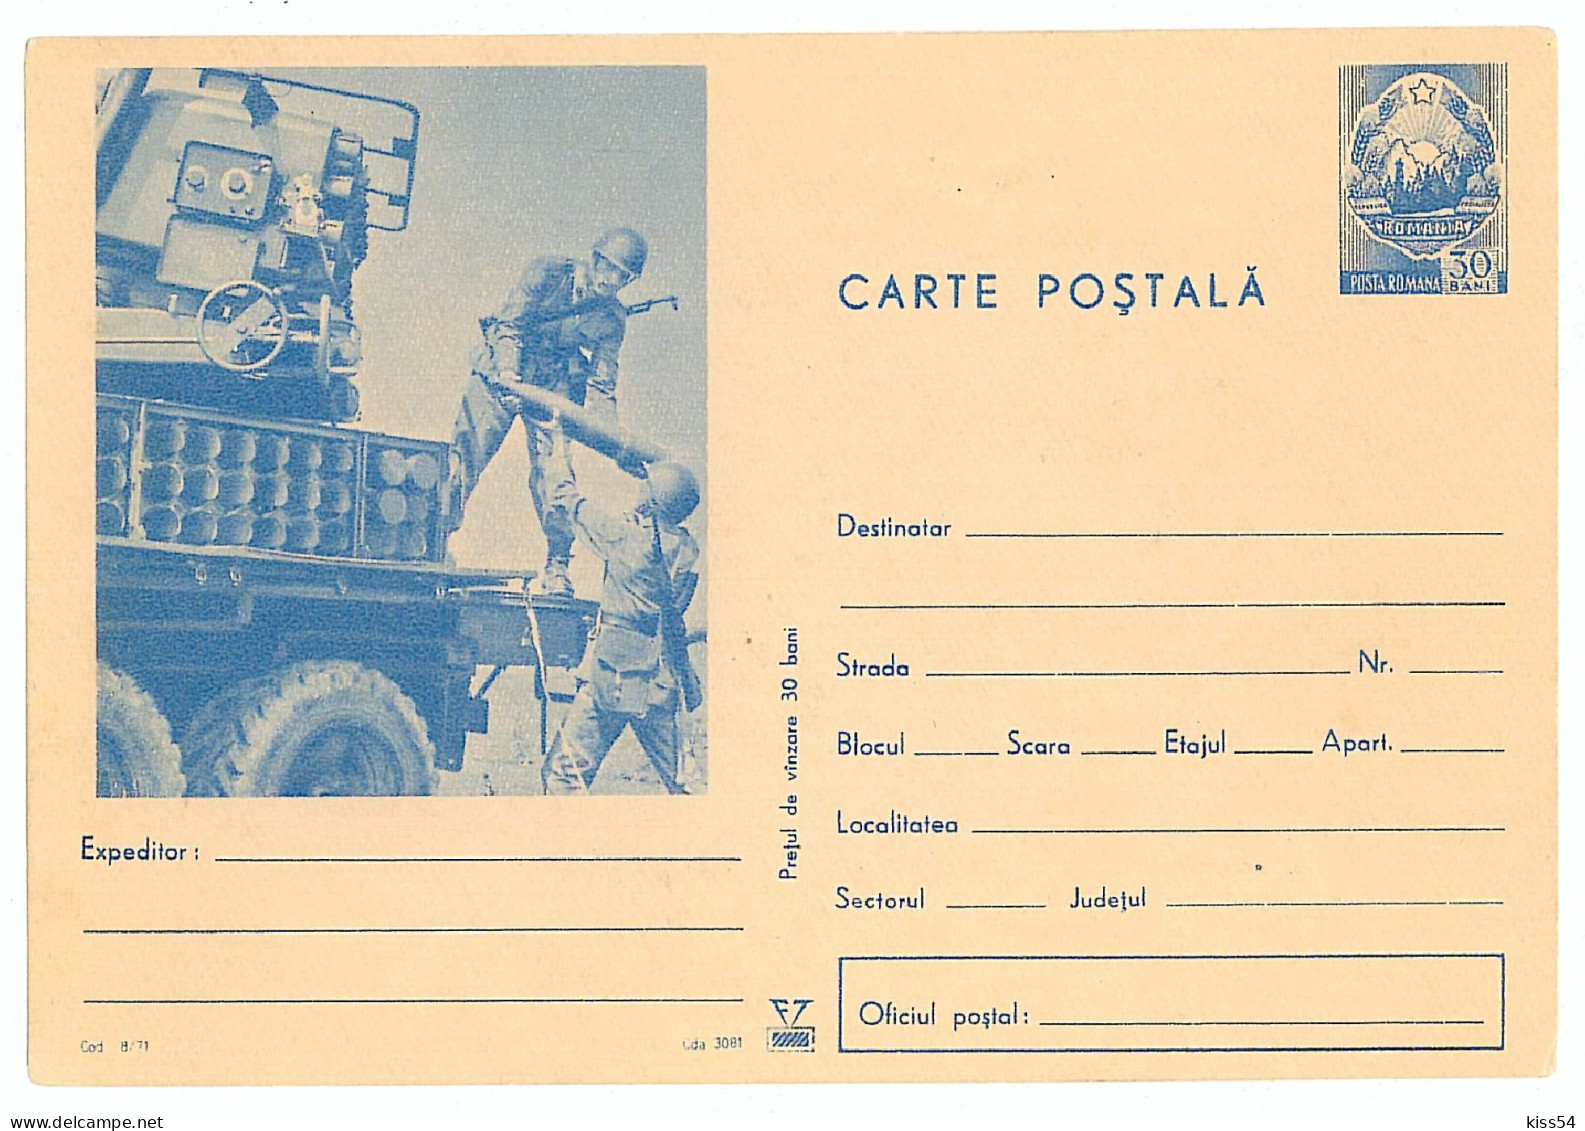 IP 71 - 8 Military - Stationery - Unused - 1971 - Postal Stationery